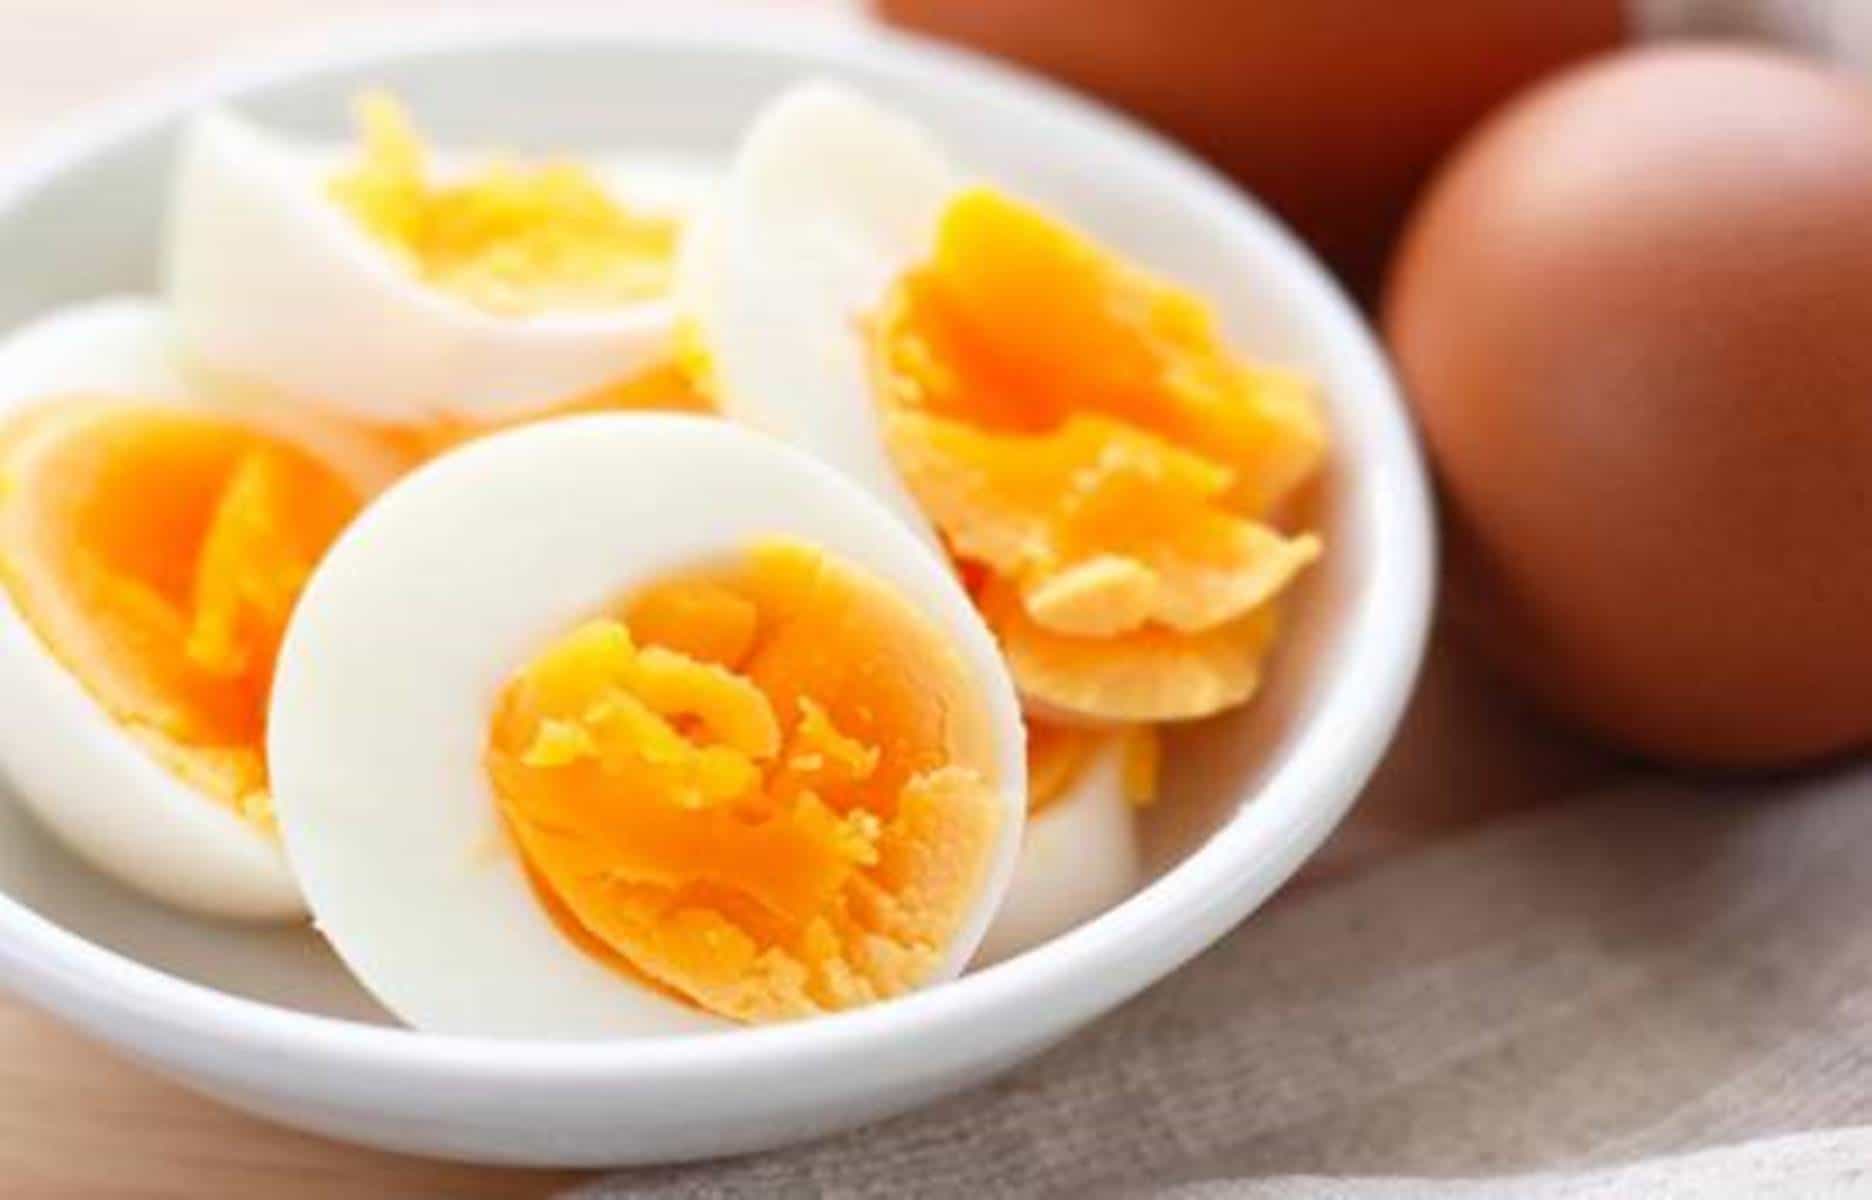 Dúvidas sobre como cozinhar ovo corretamente? Confira agora mesmo a forma ideal